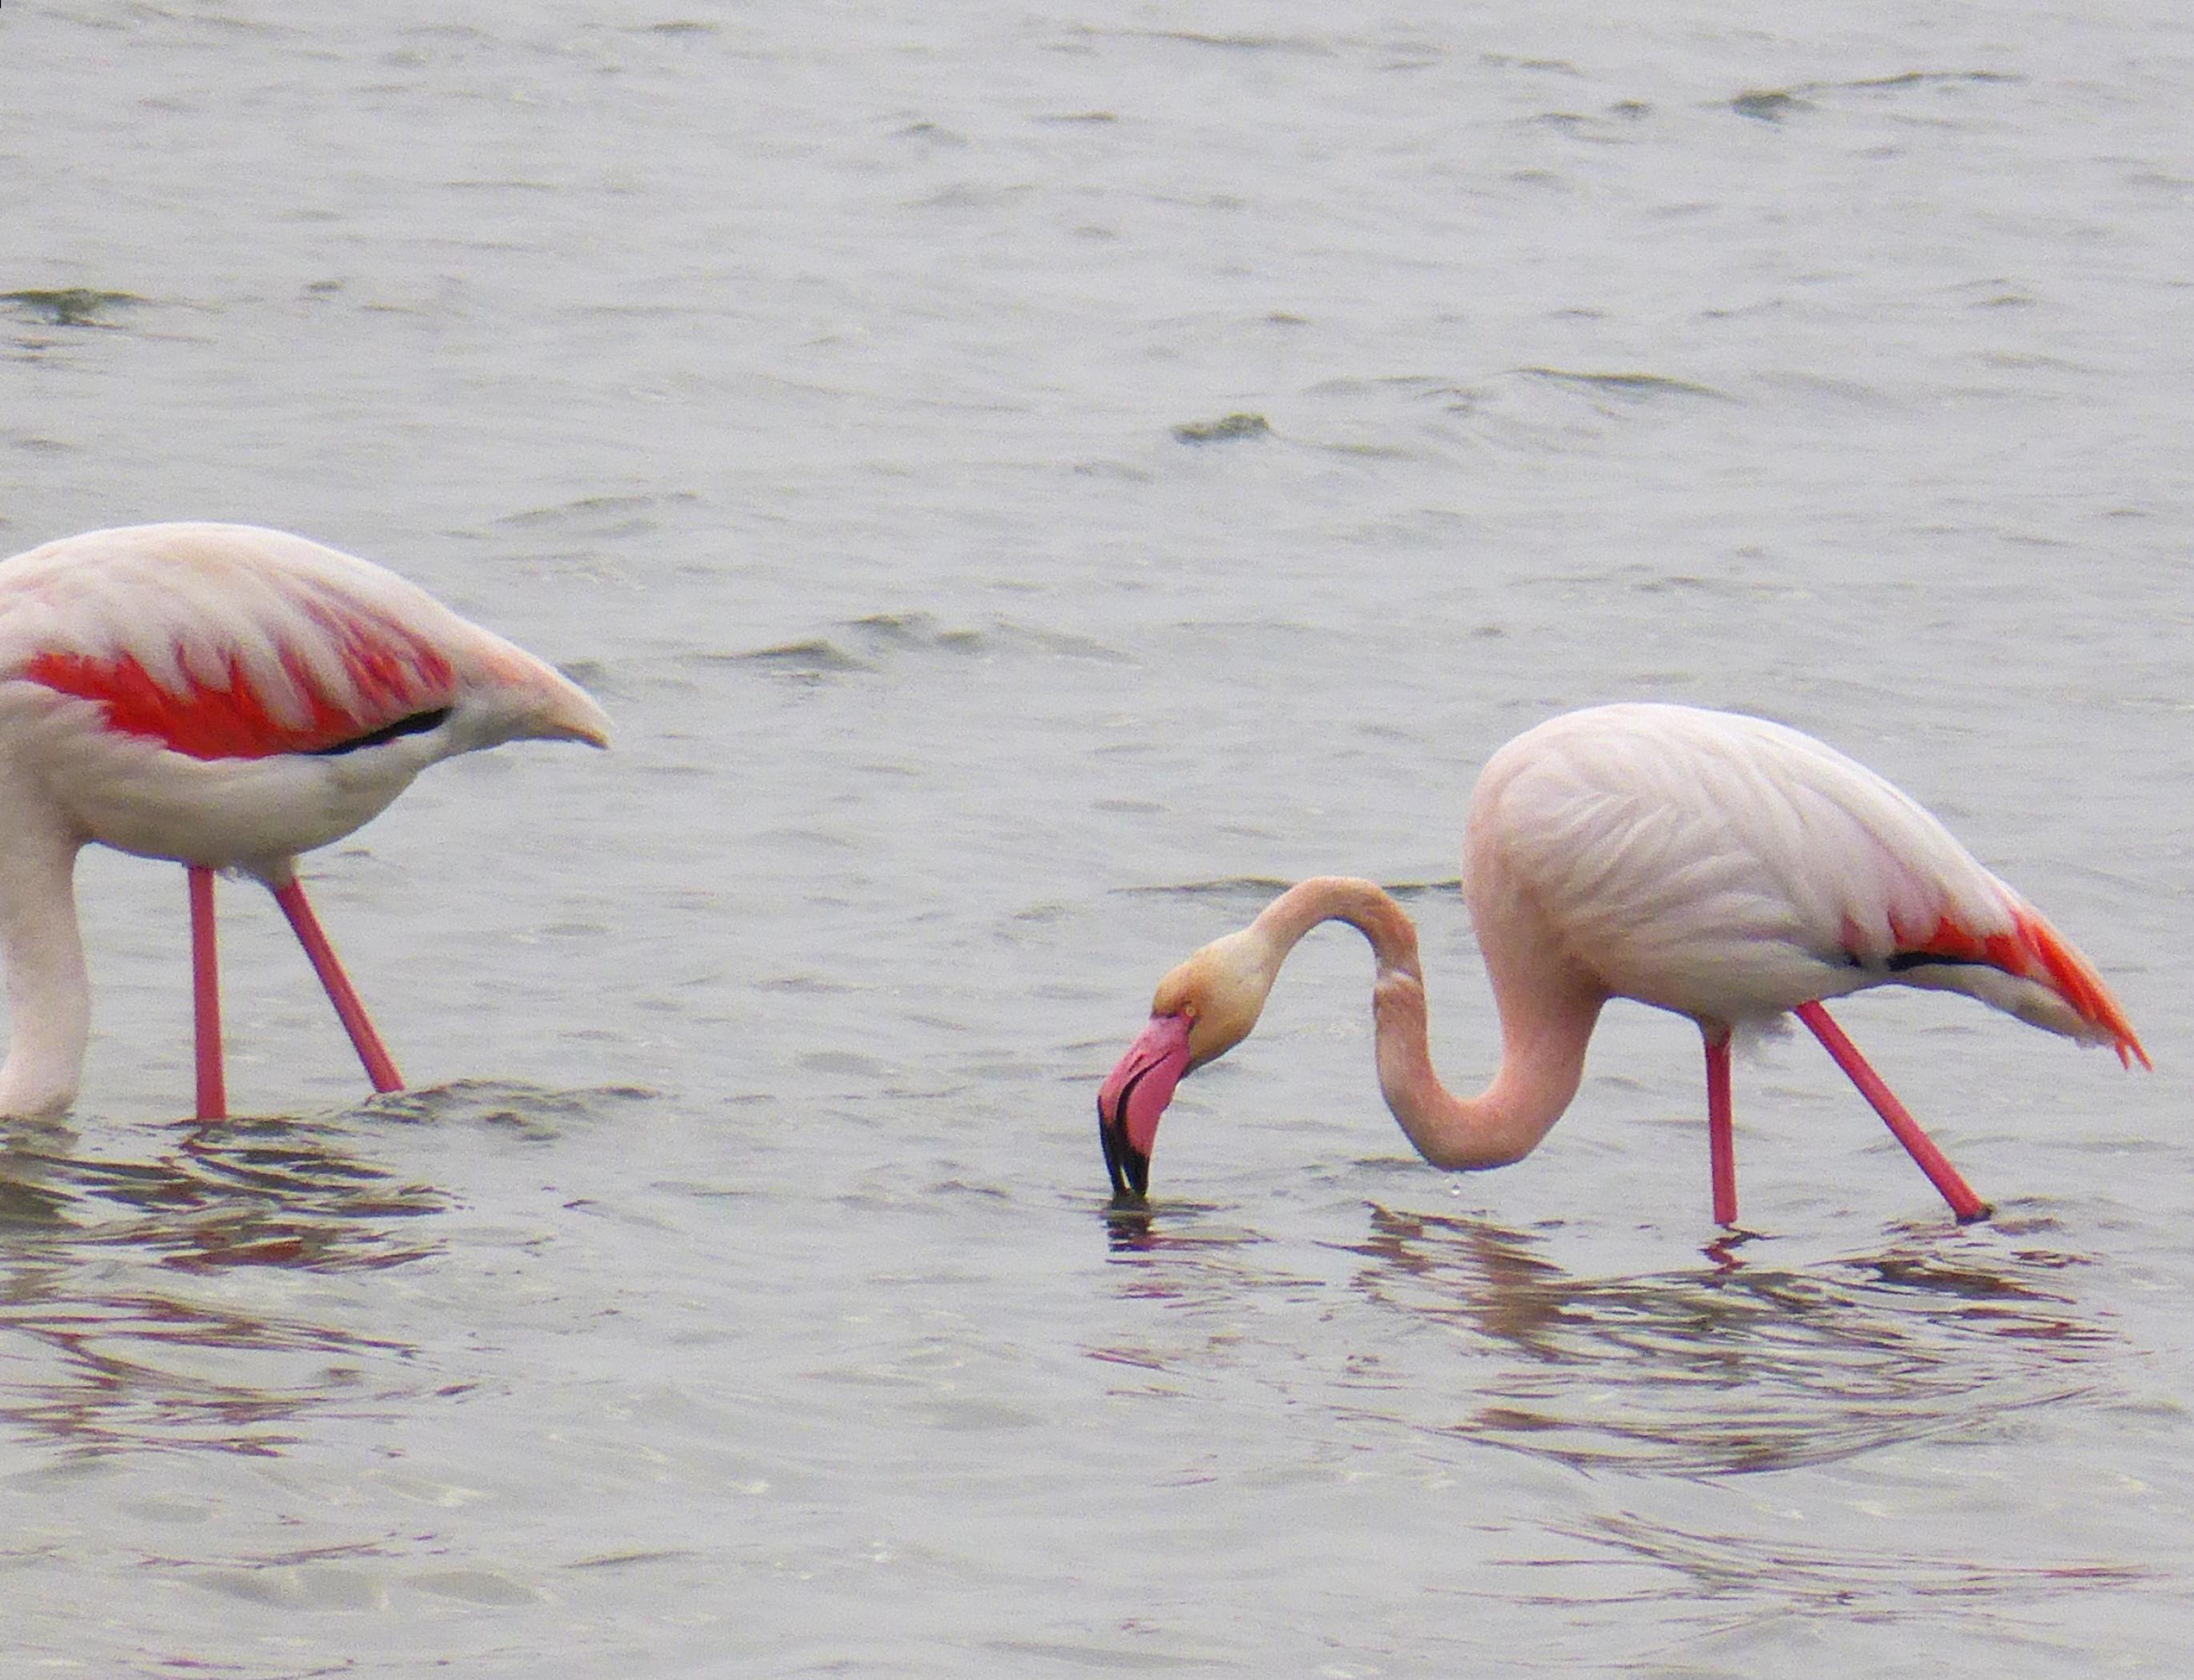 im Wasser stehender und nach Nahrung suchender Flamingo.